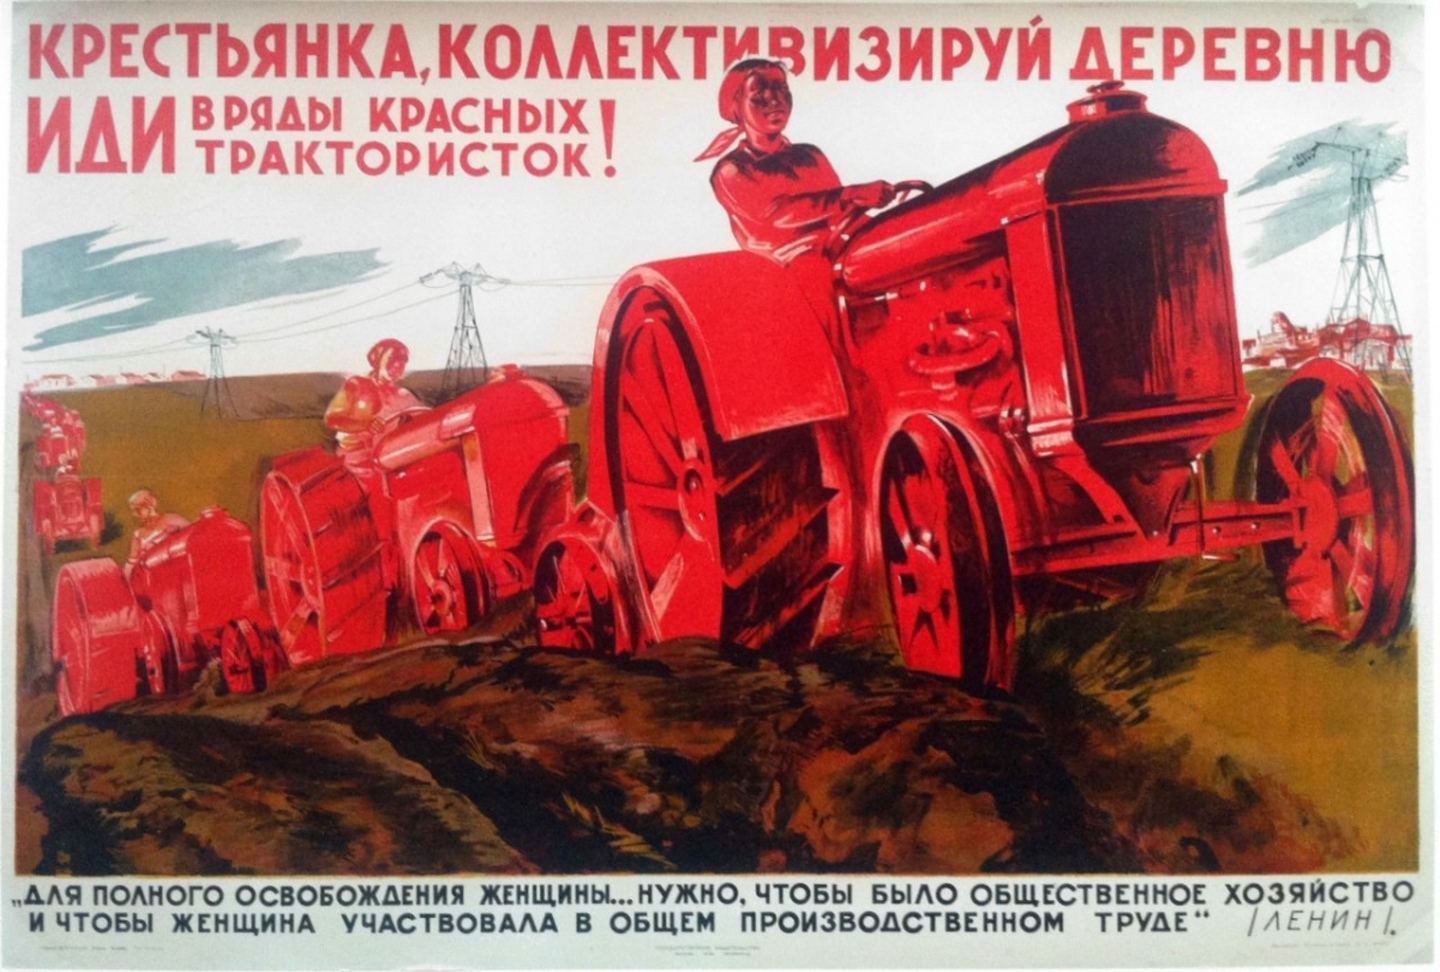 Великая страна СССР, Крестьянка иди в ряды красных трактористок